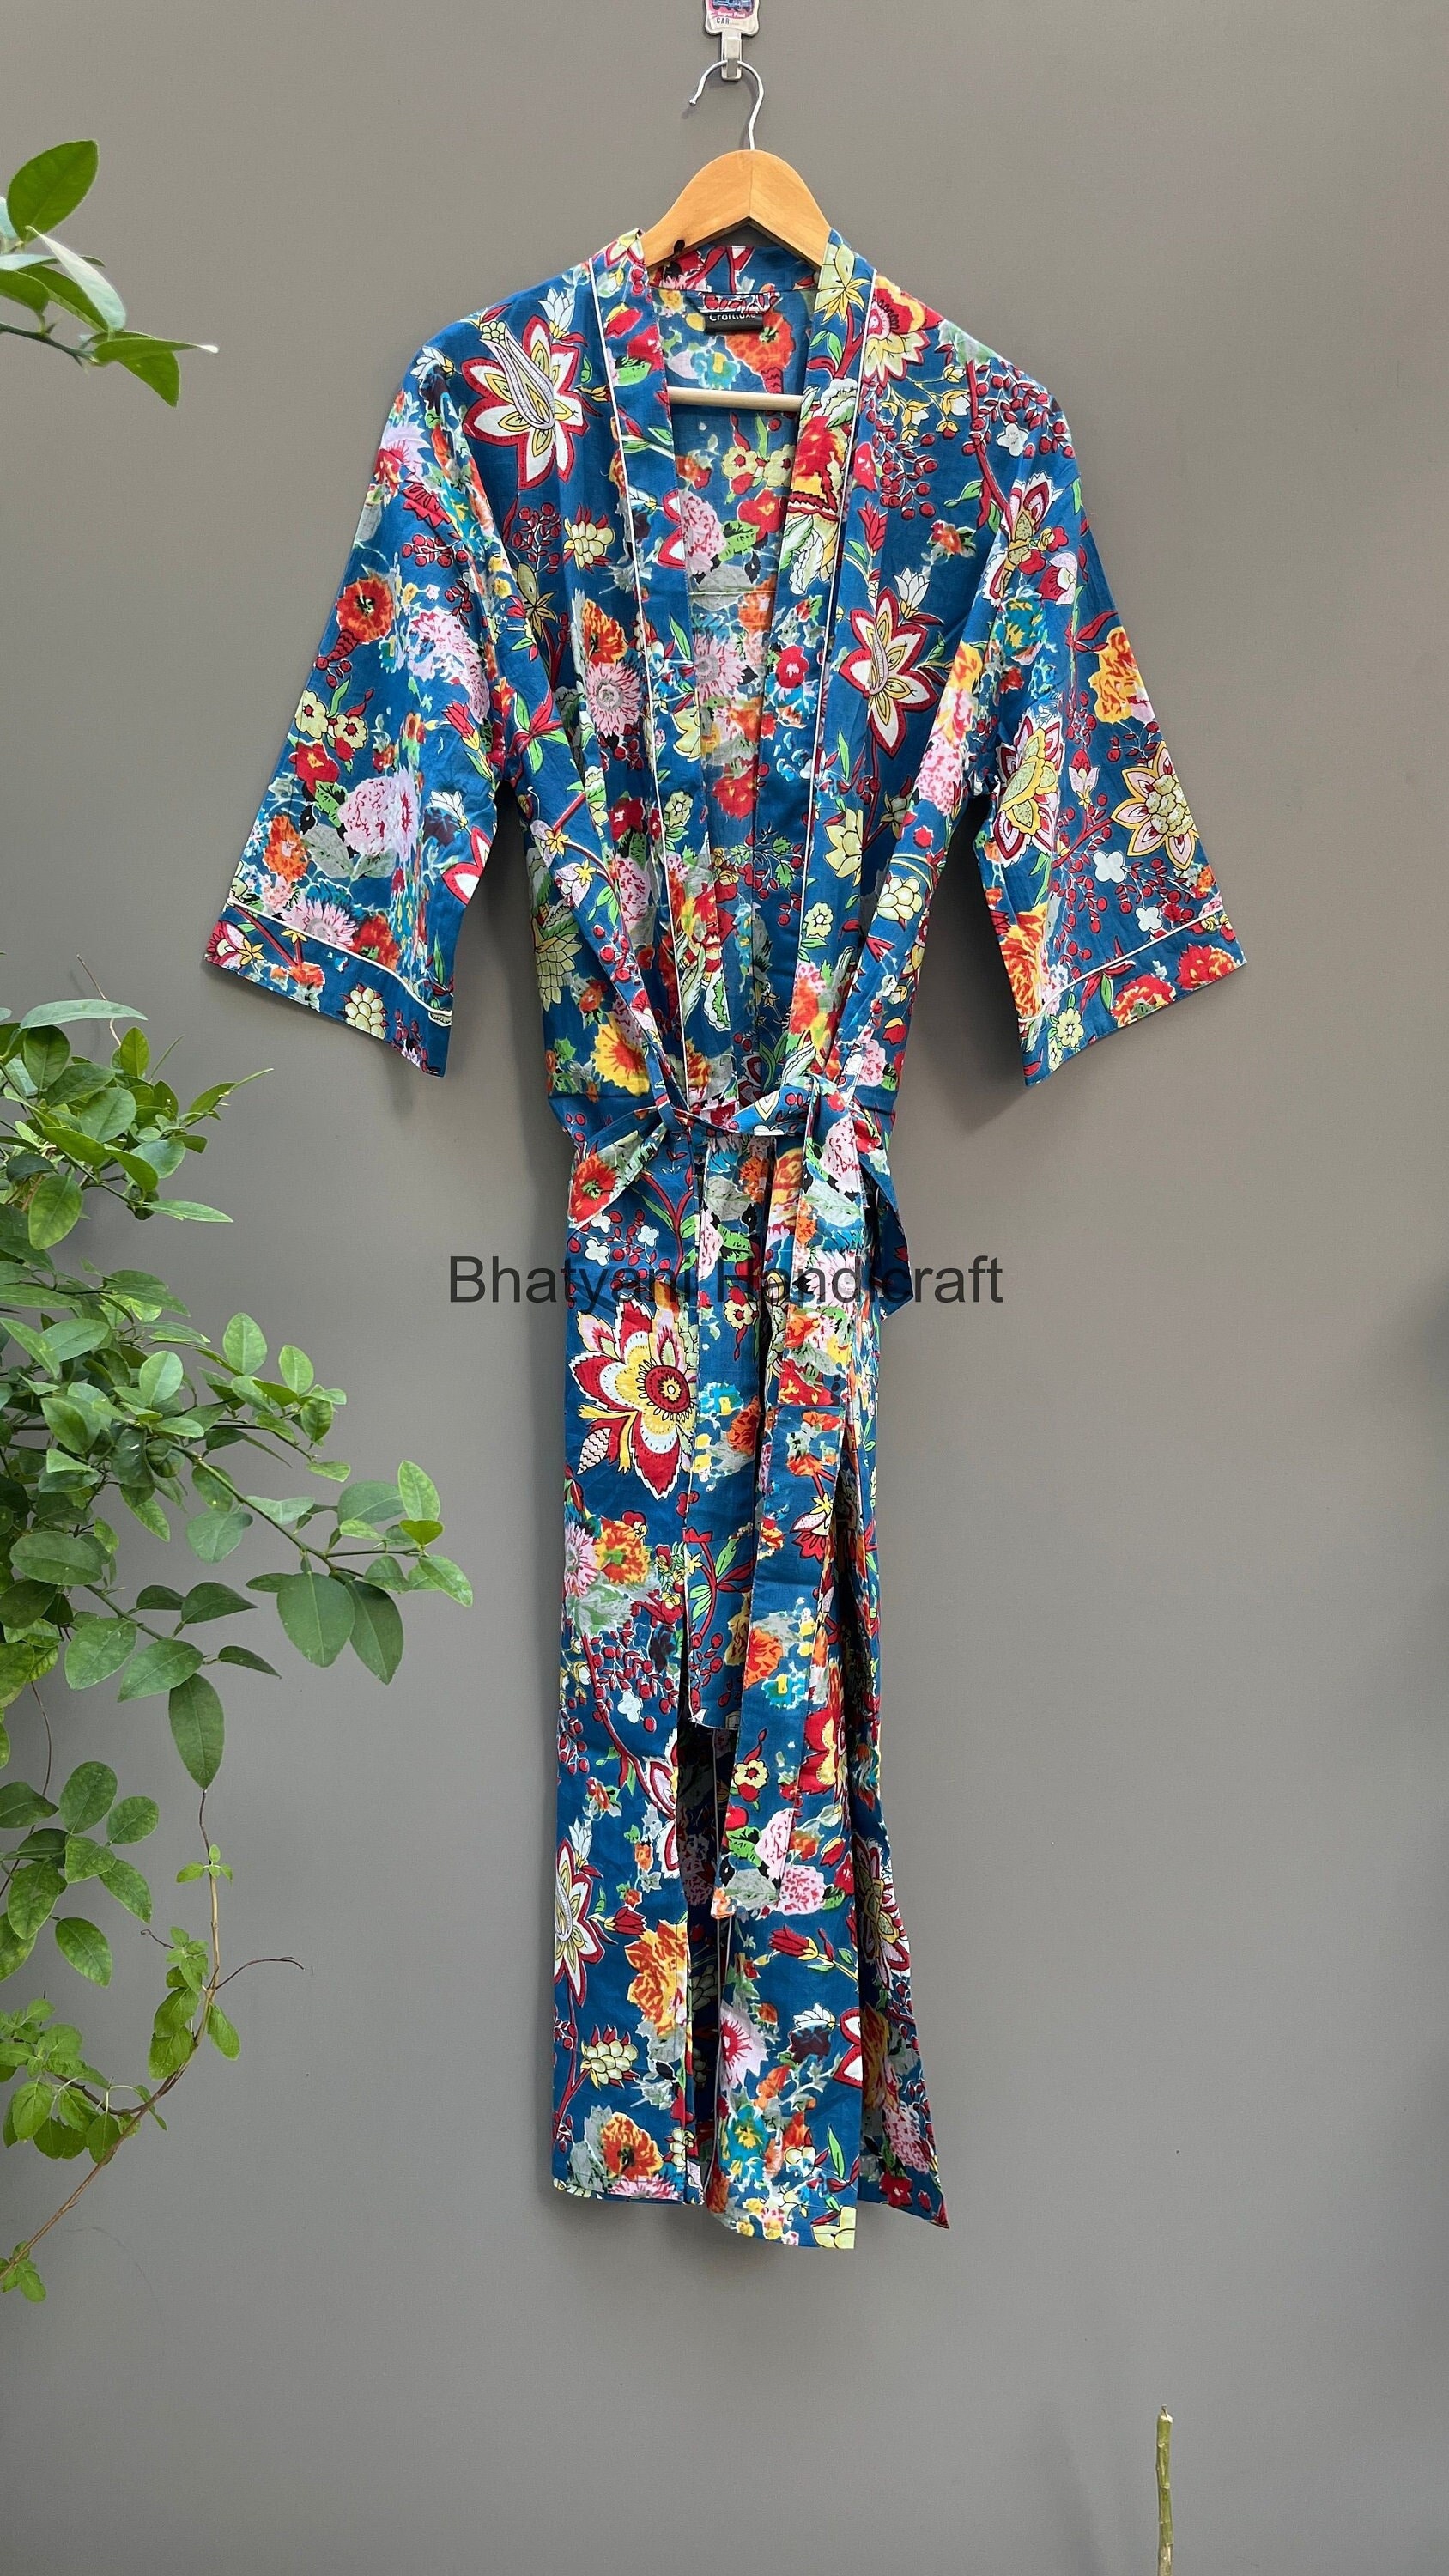 Express-Lieferung - Baumwoll-Kimono-Roben, Blumendruck-Kimono, Weiche Und Bequeme Bademäntel, Wickelkleid von Bhatyanihandicraft